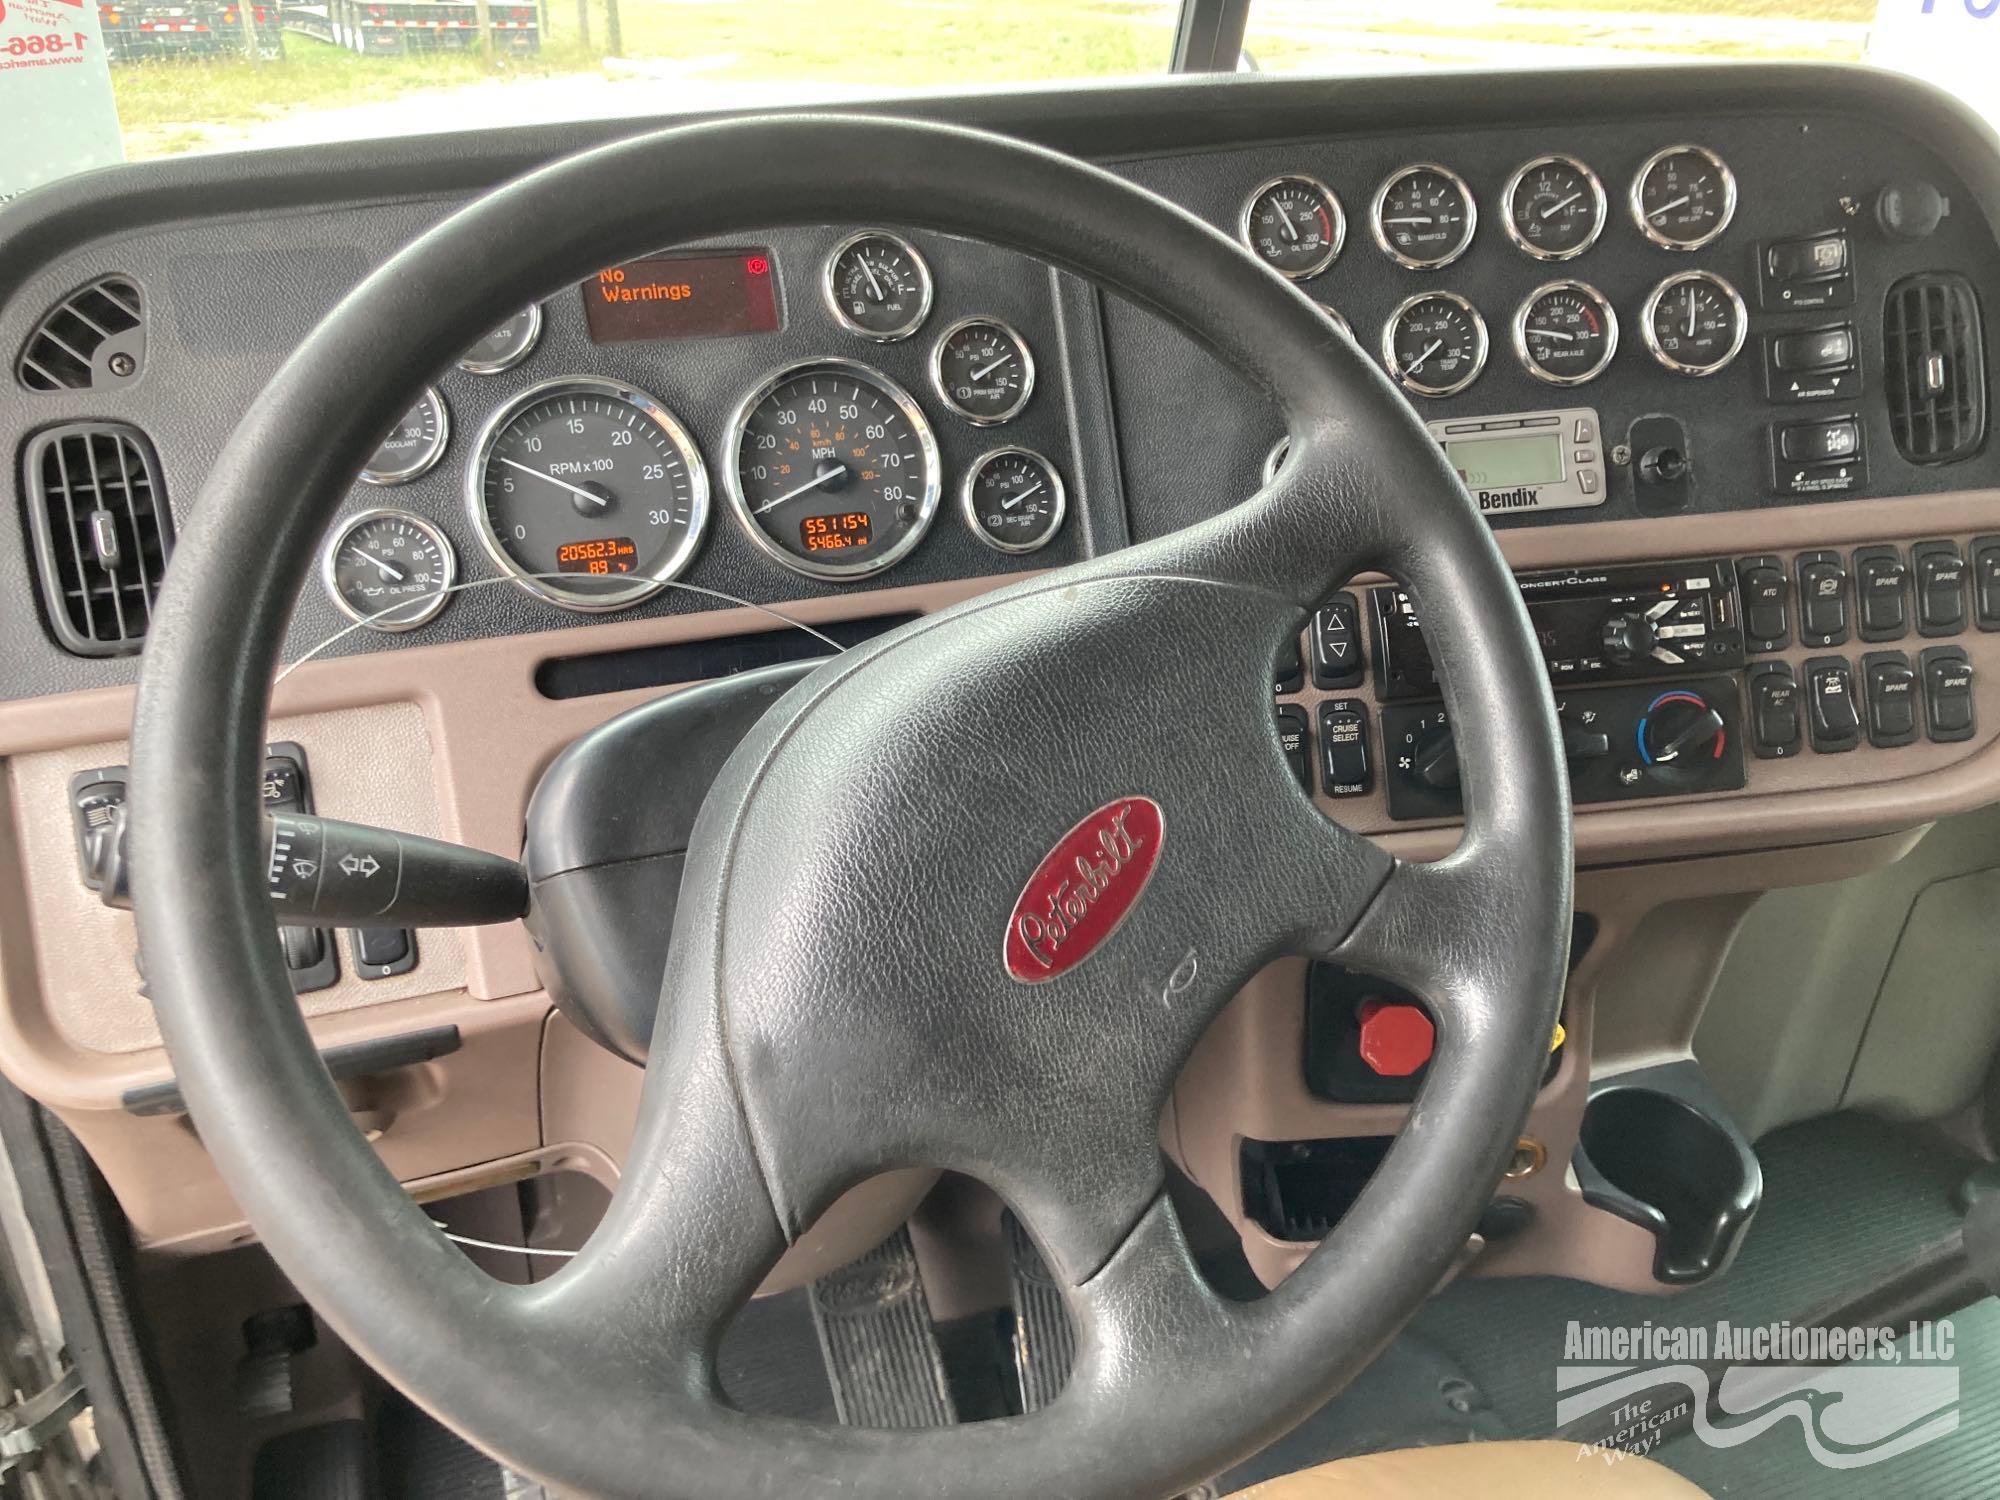 2016 Peterbilt 389 Truck